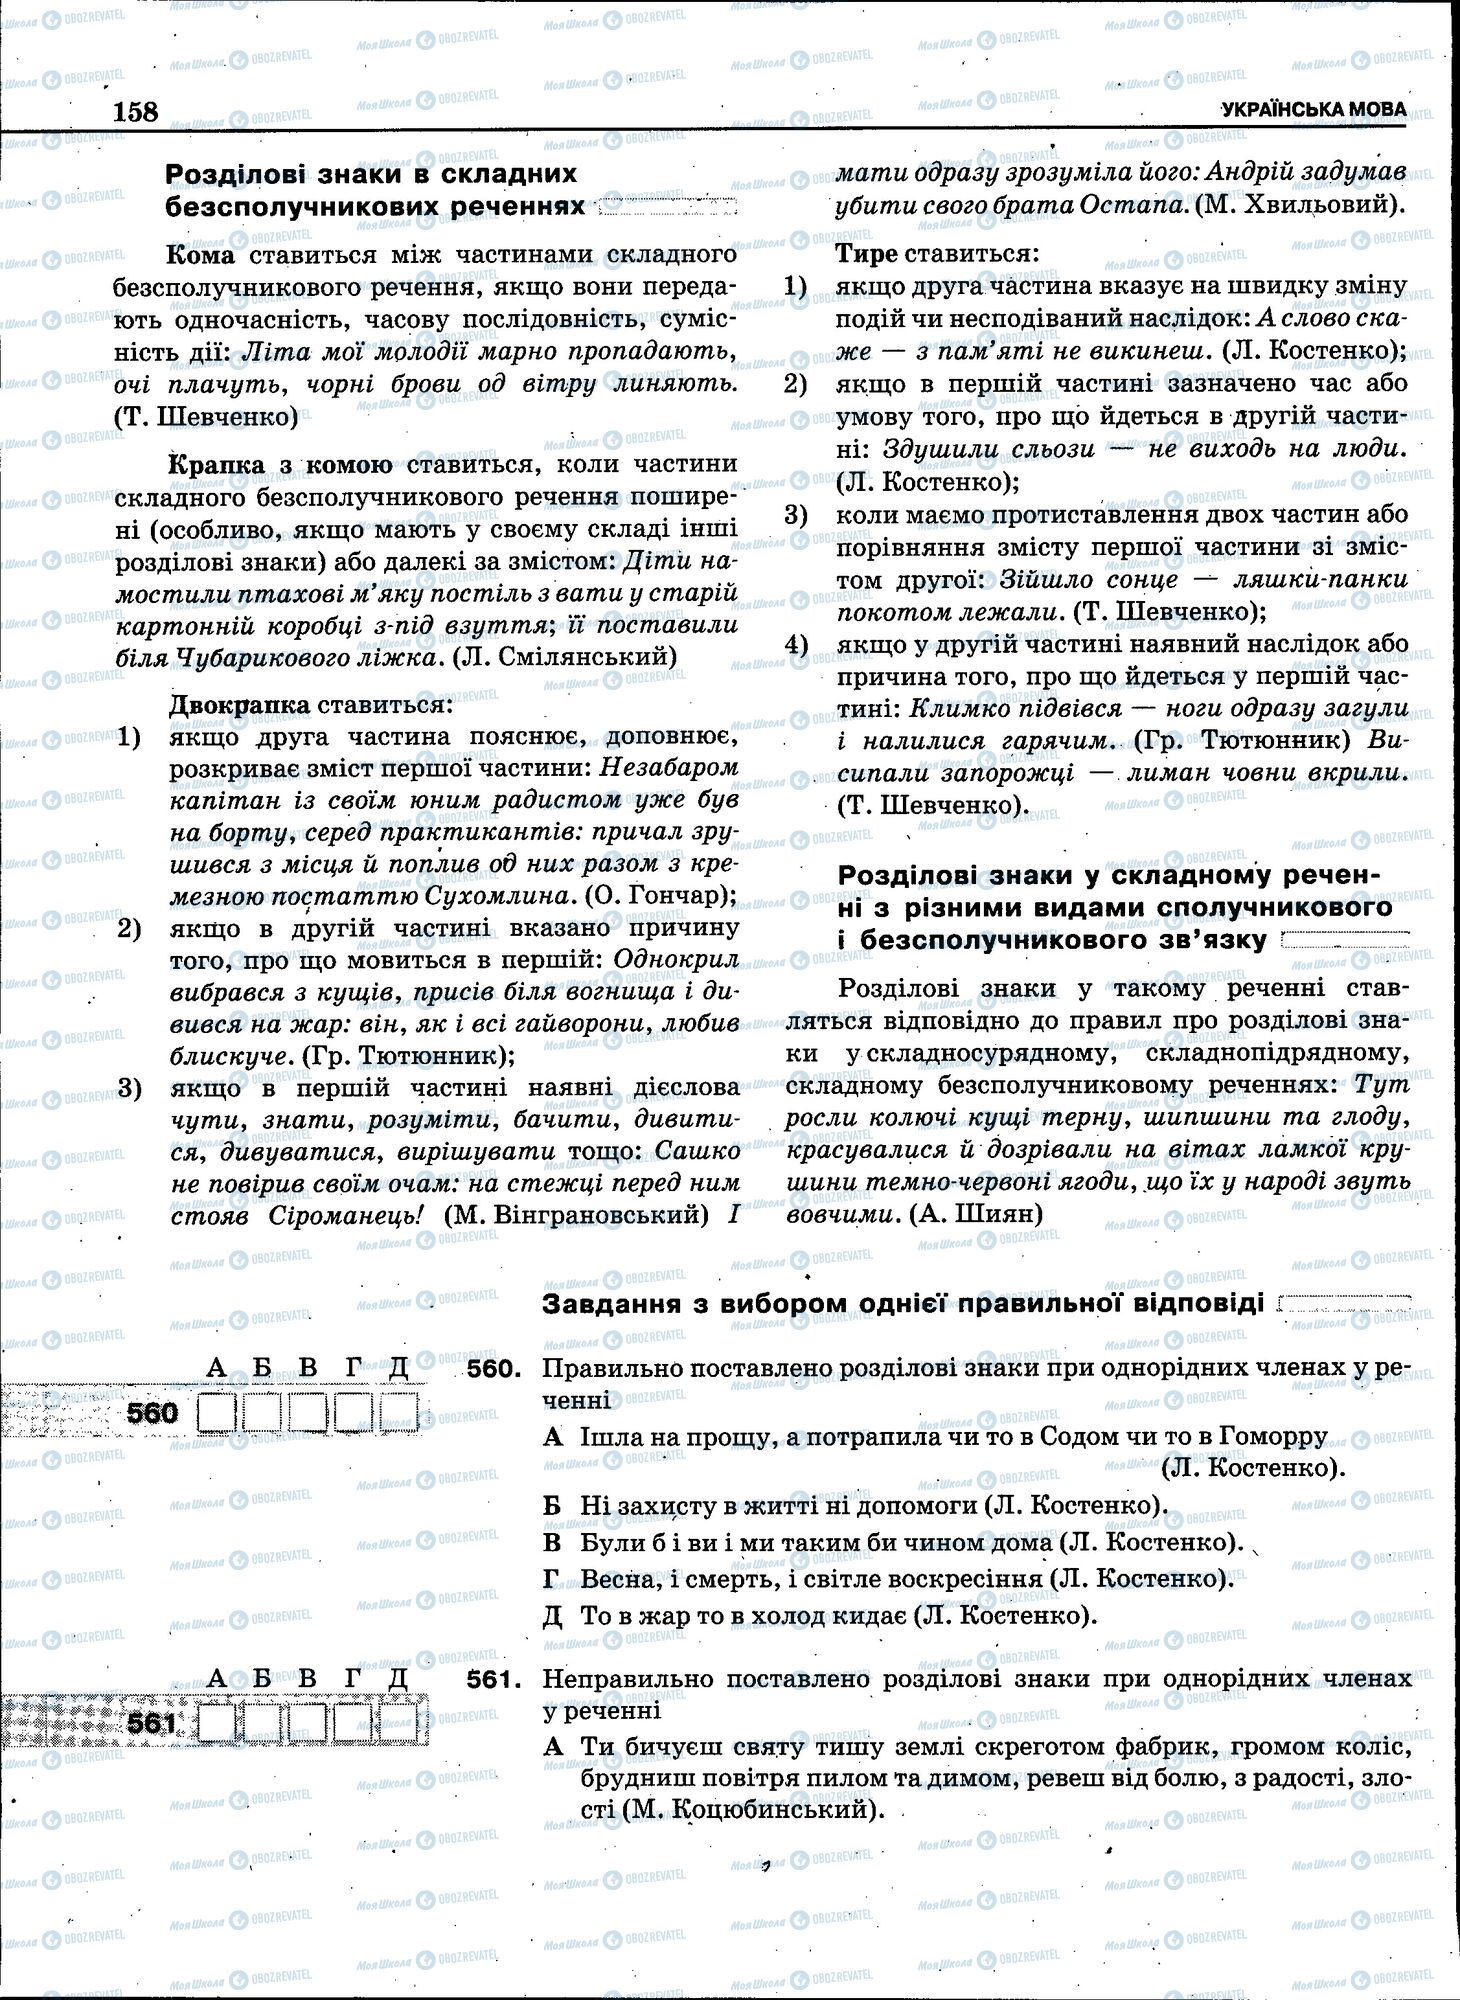 ЗНО Укр мова 11 класс страница 156